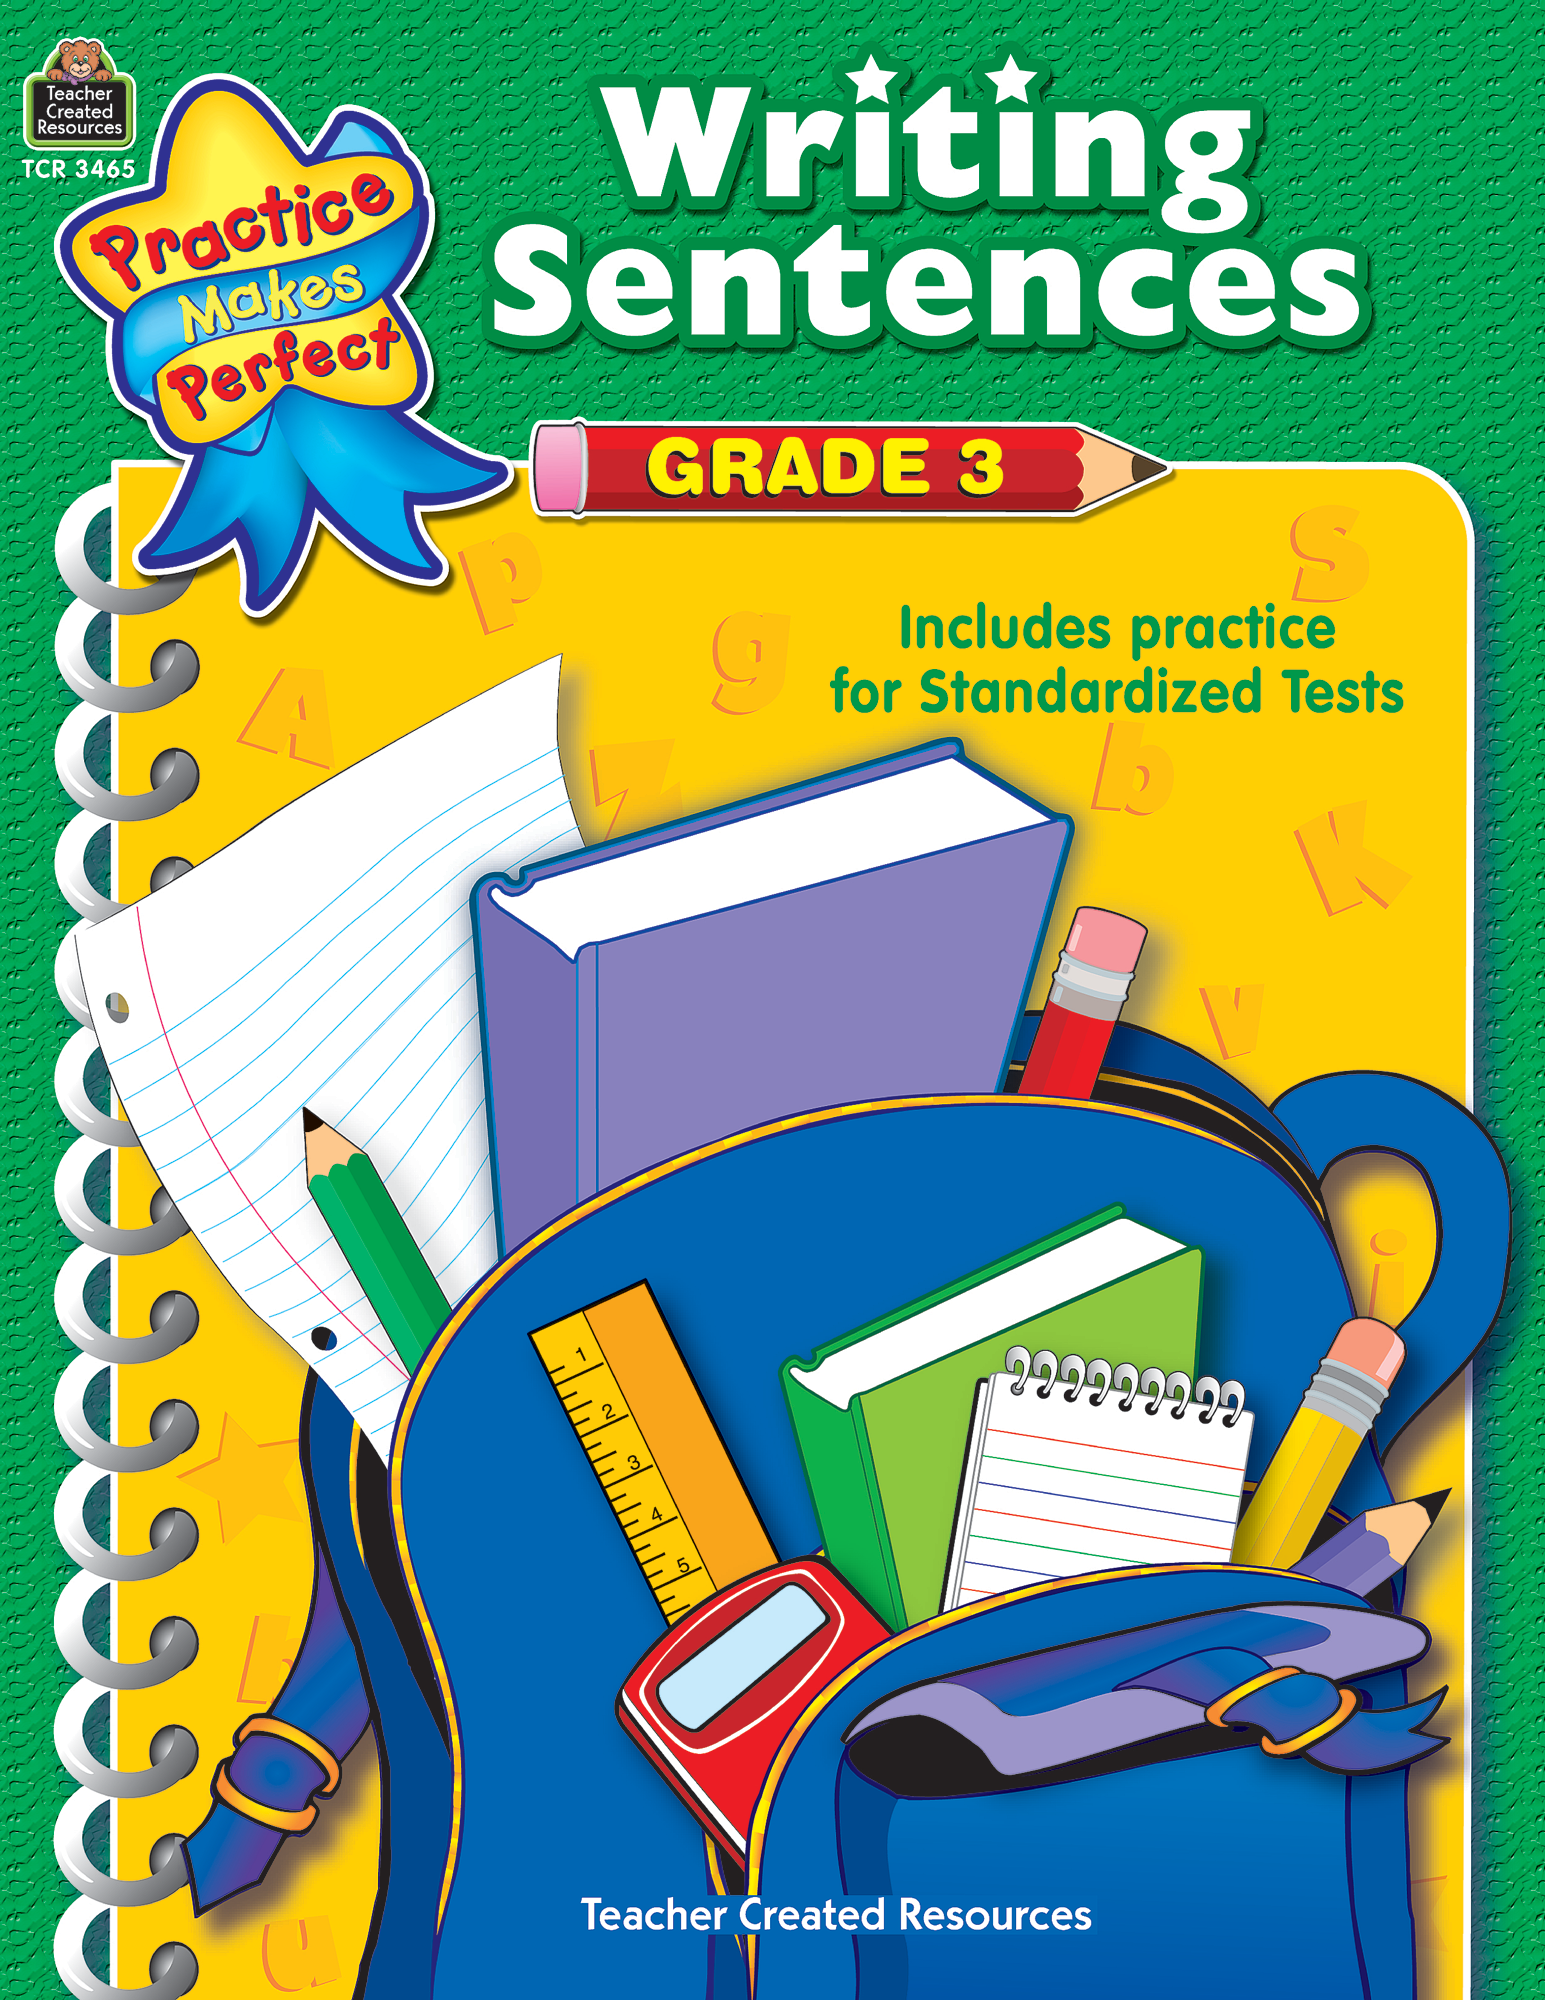 8-best-images-of-kindergarten-sentence-worksheets-sentence-worksheets-asking-and-telling